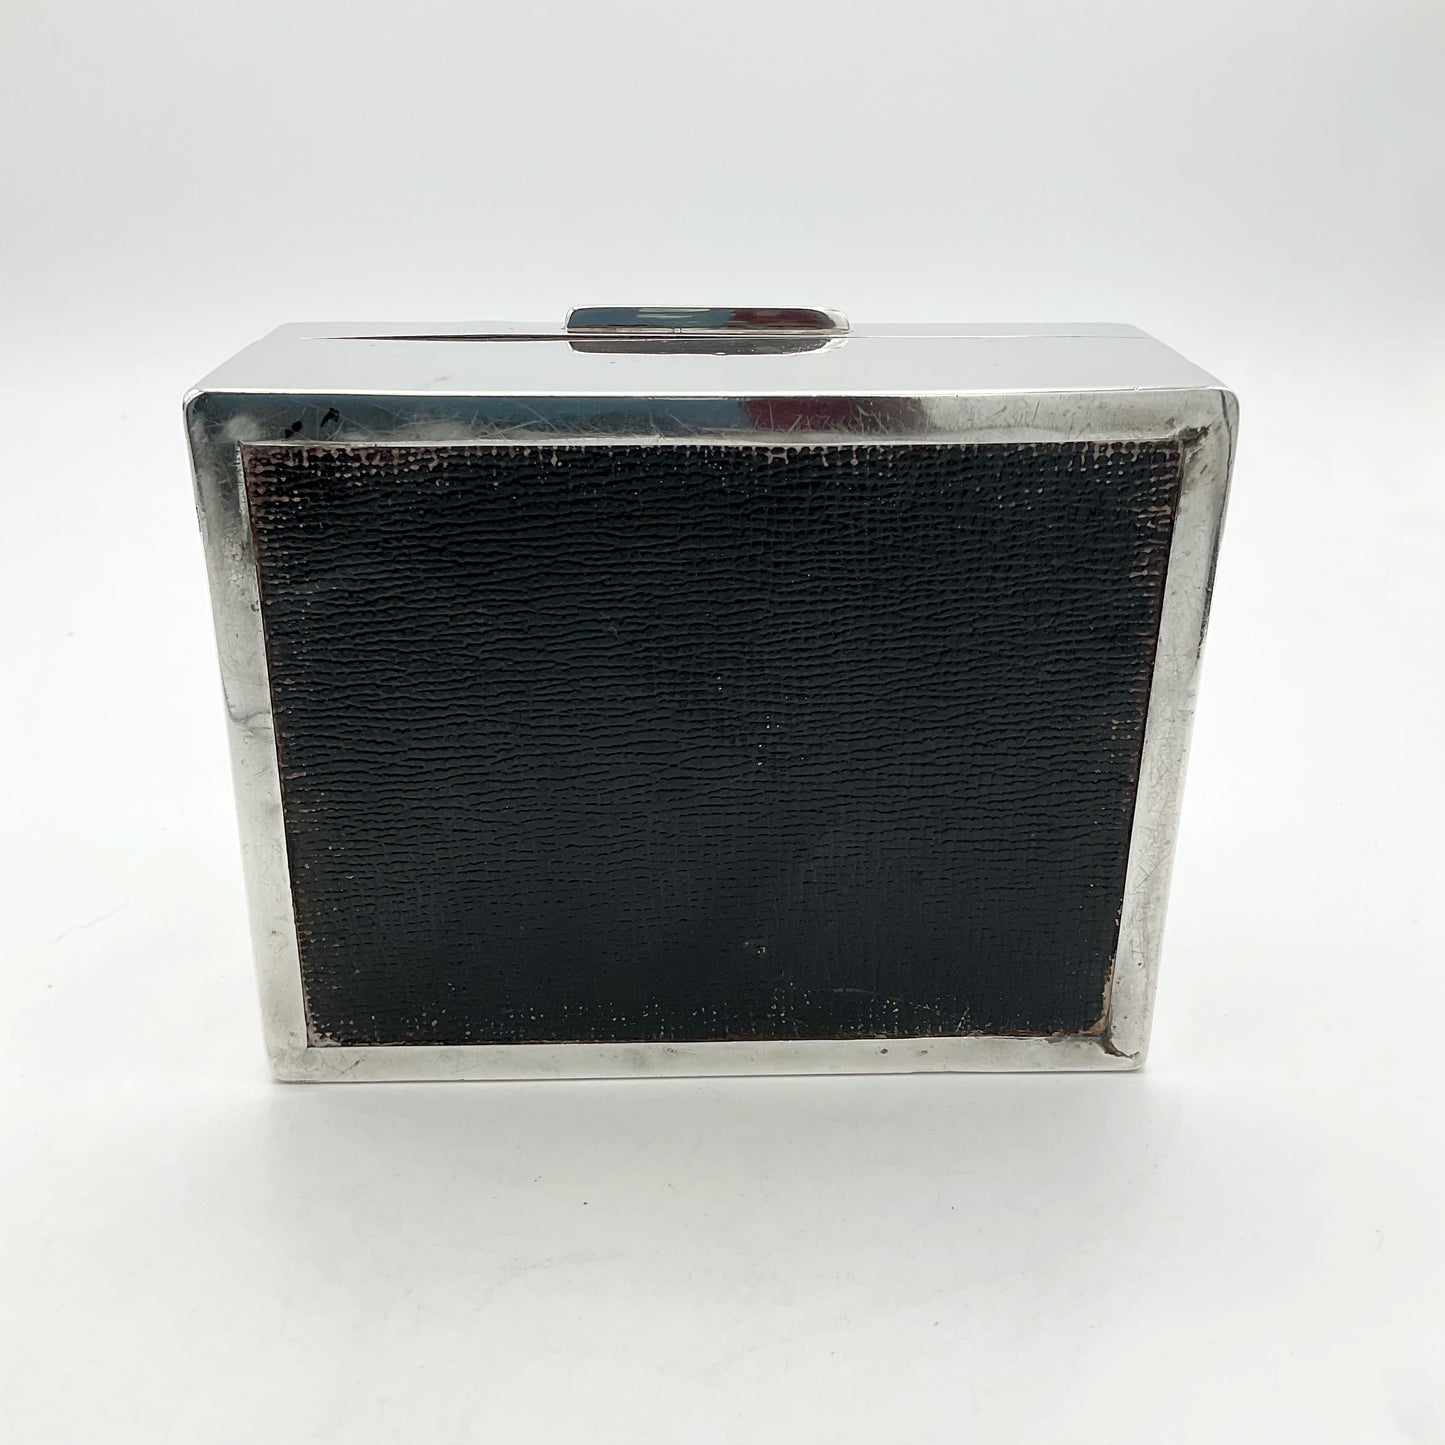 Black base of the 1944 silver cigarette box